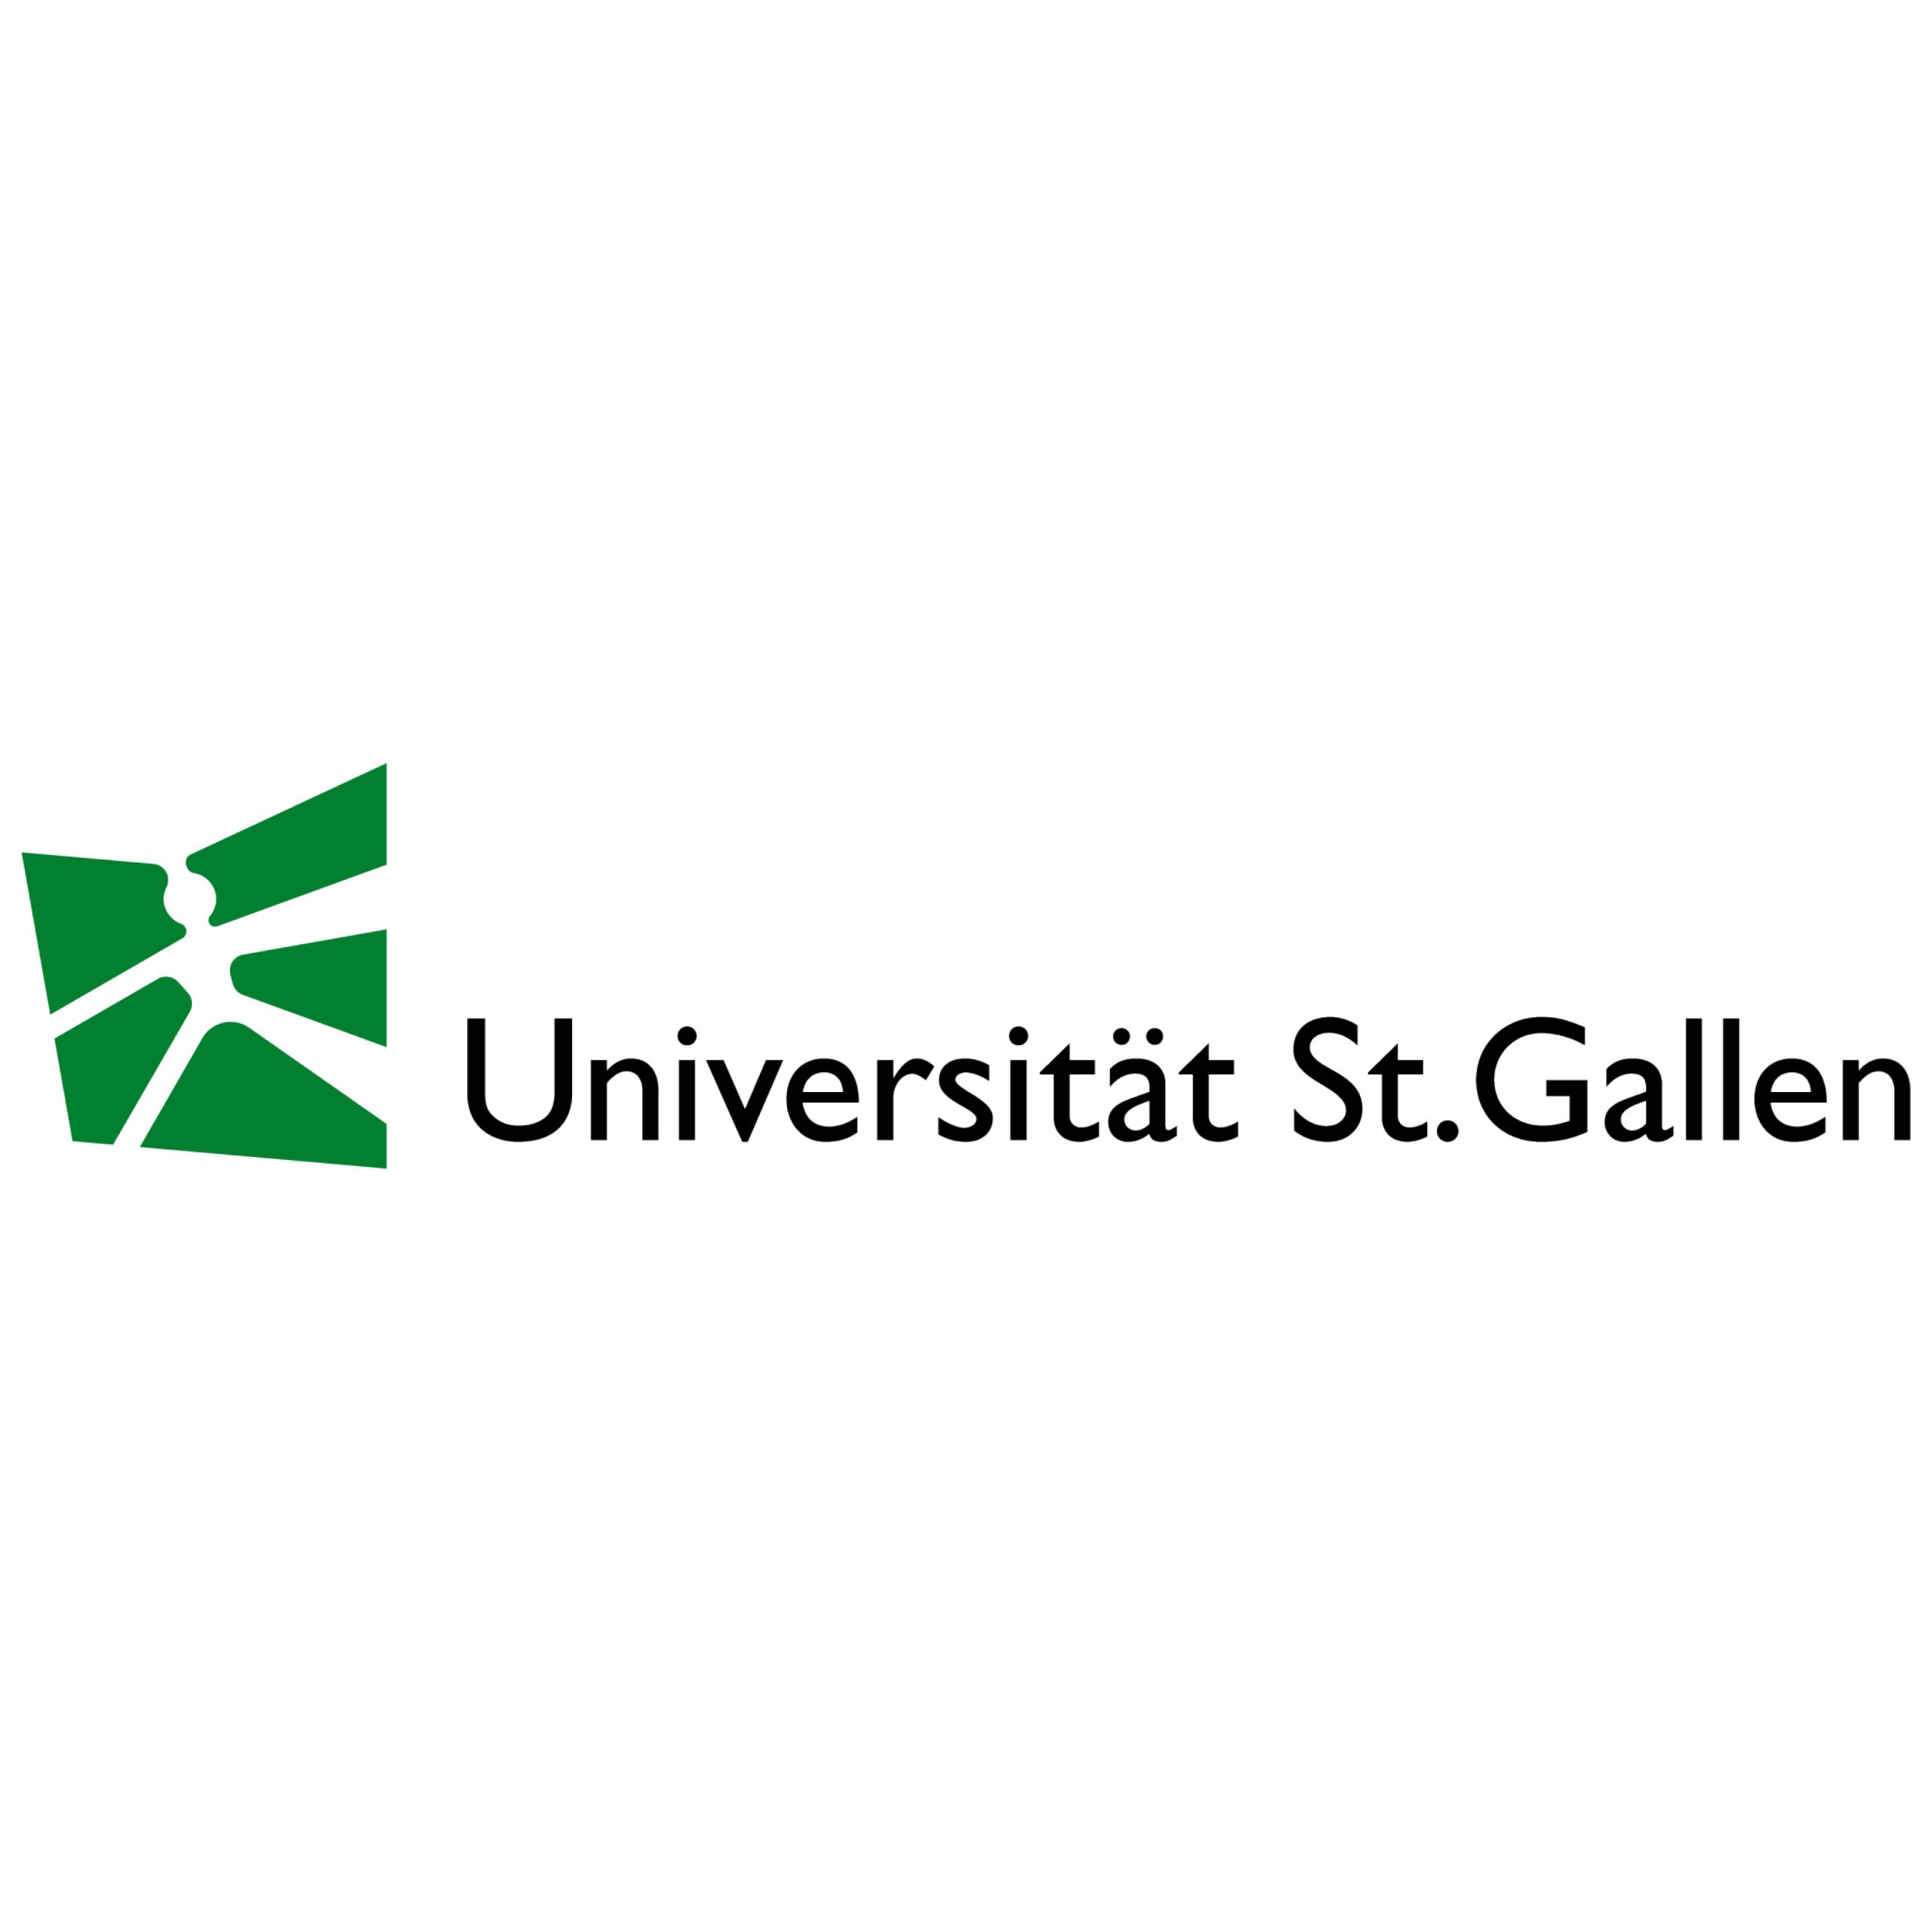 Universitaet-St.Gallen